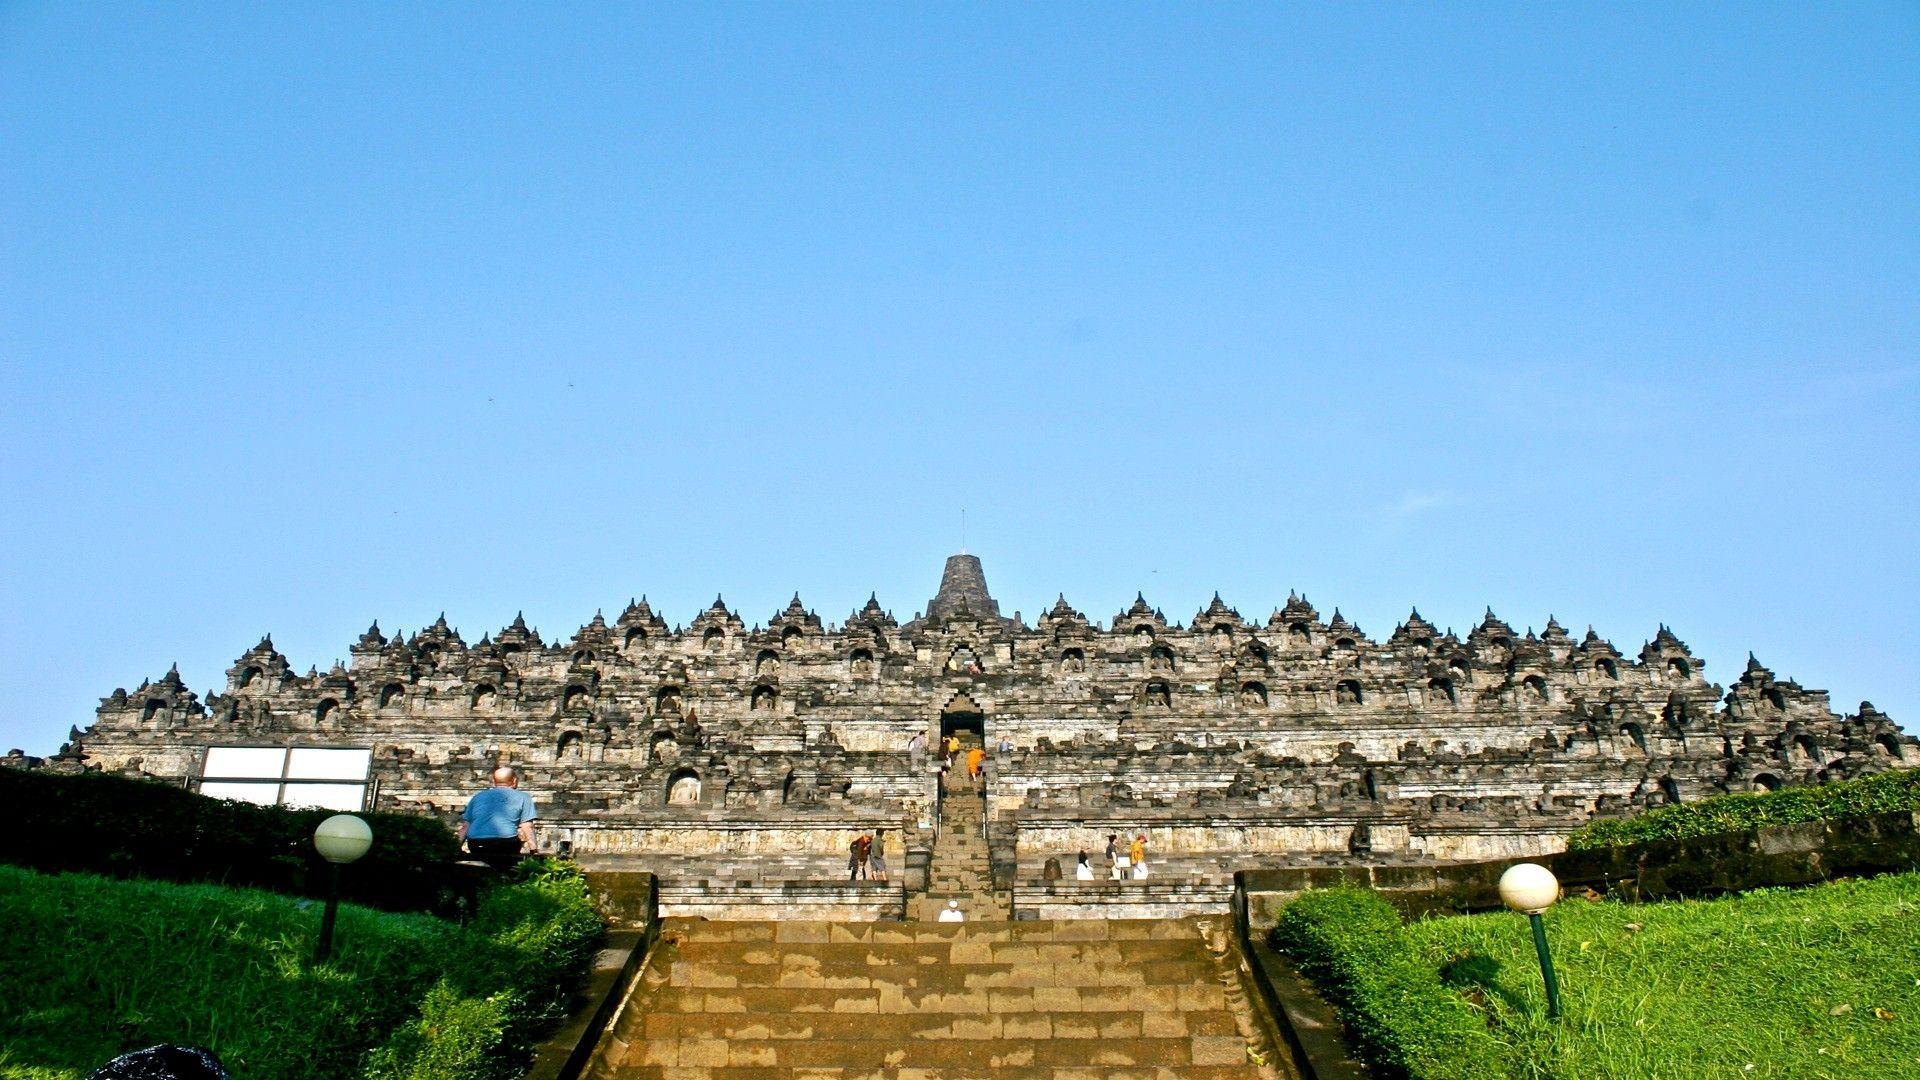 1920x1080 Đền nổi tiếng Borobudur ở Địa điểm du lịch Magelang Regency Indonesia